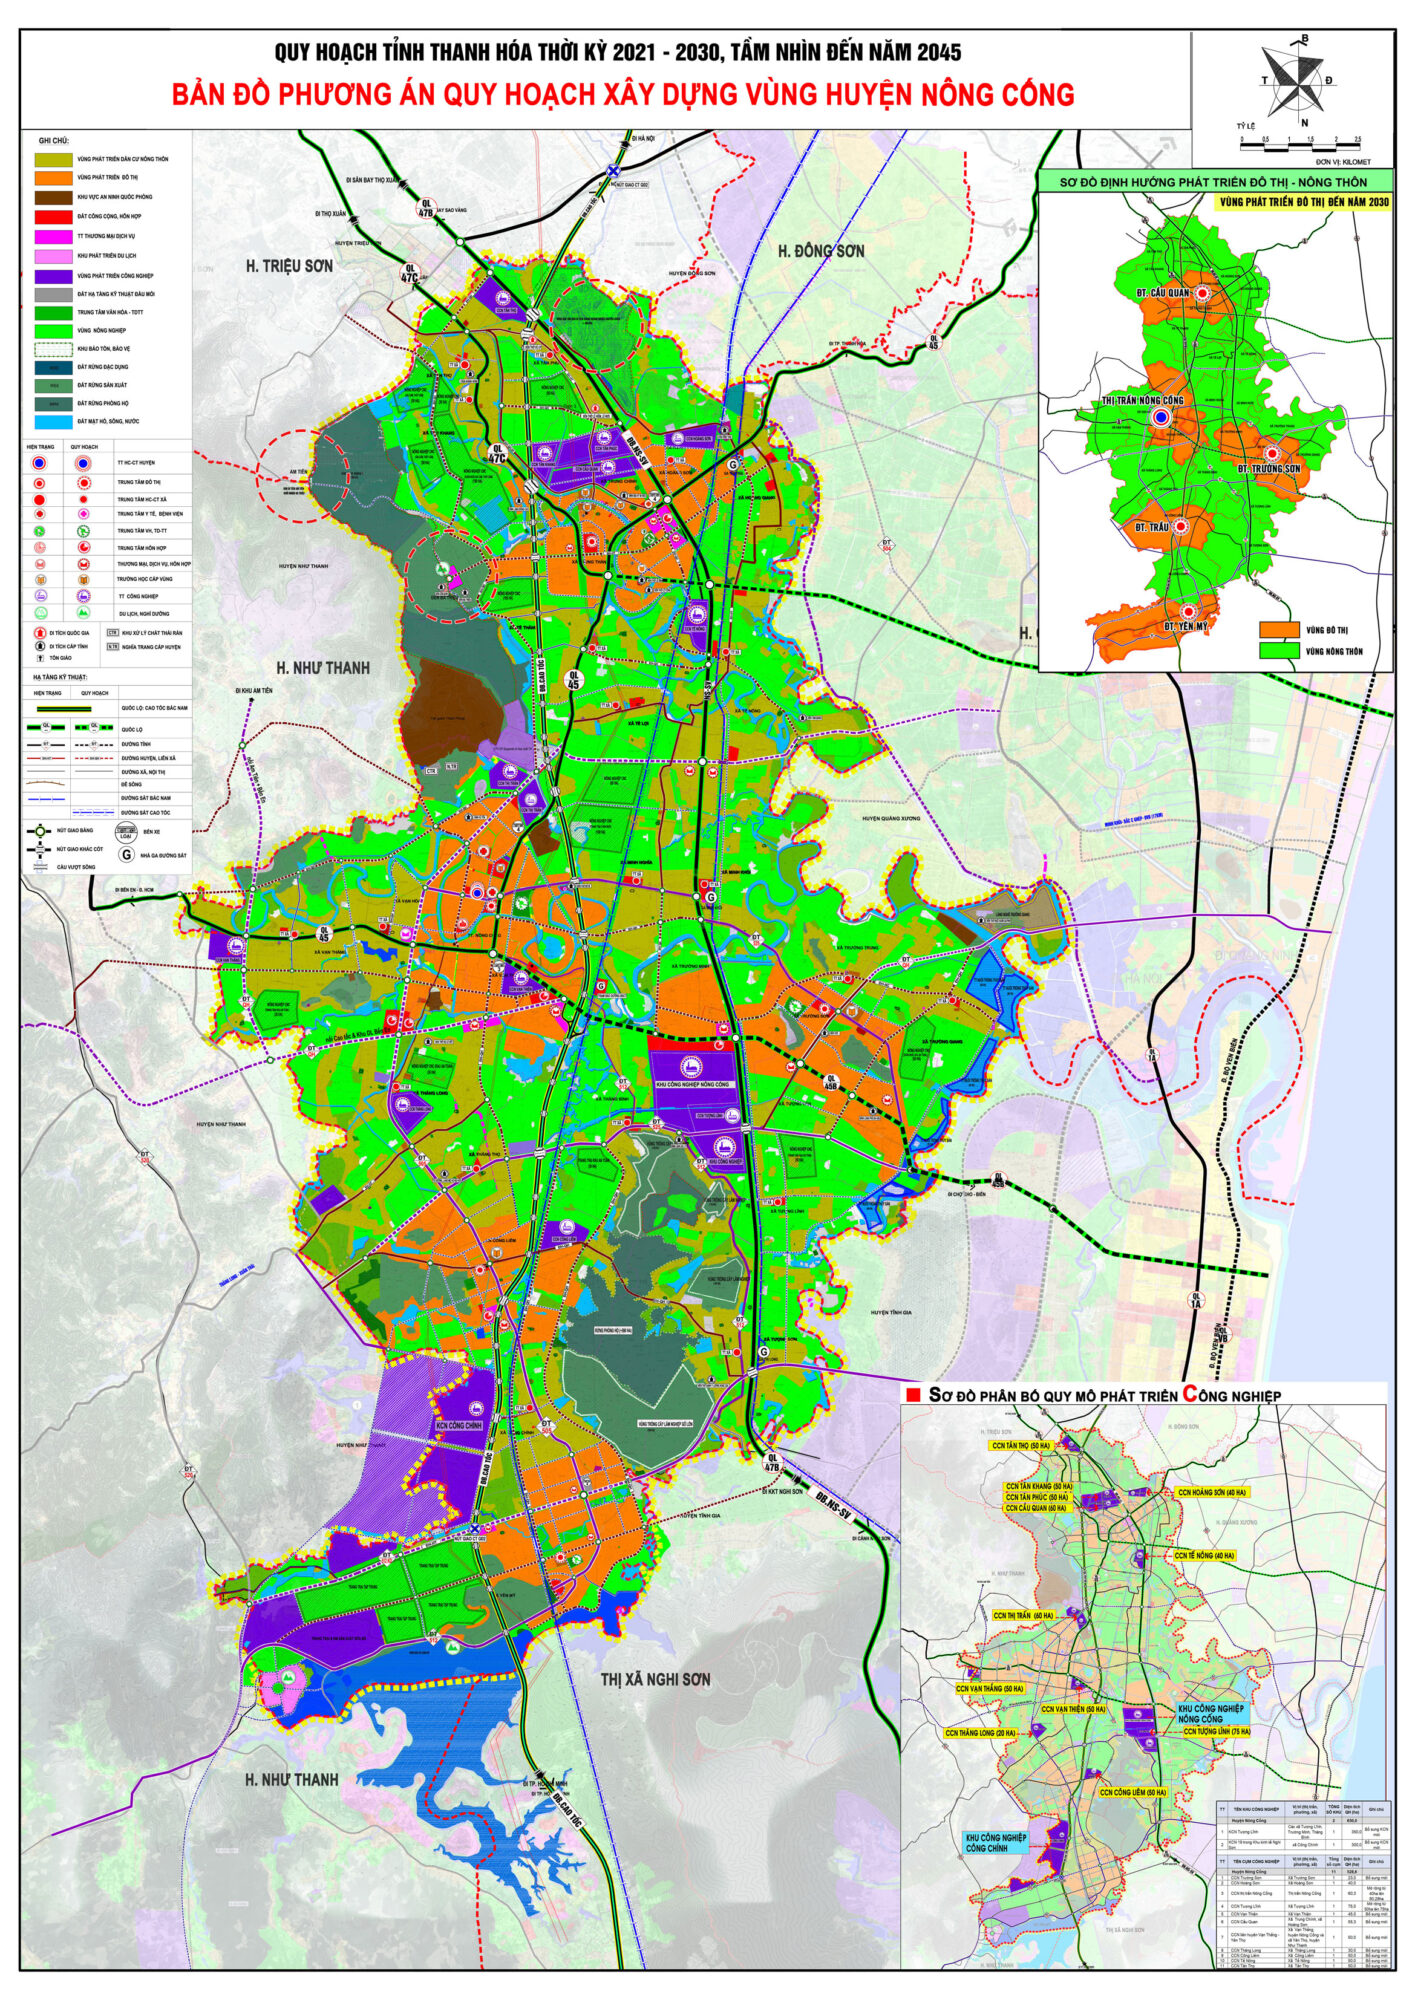 Bản đồ quy hoạch huyện Nông Cống, tỉnh Thanh Hóa đến năm 2030